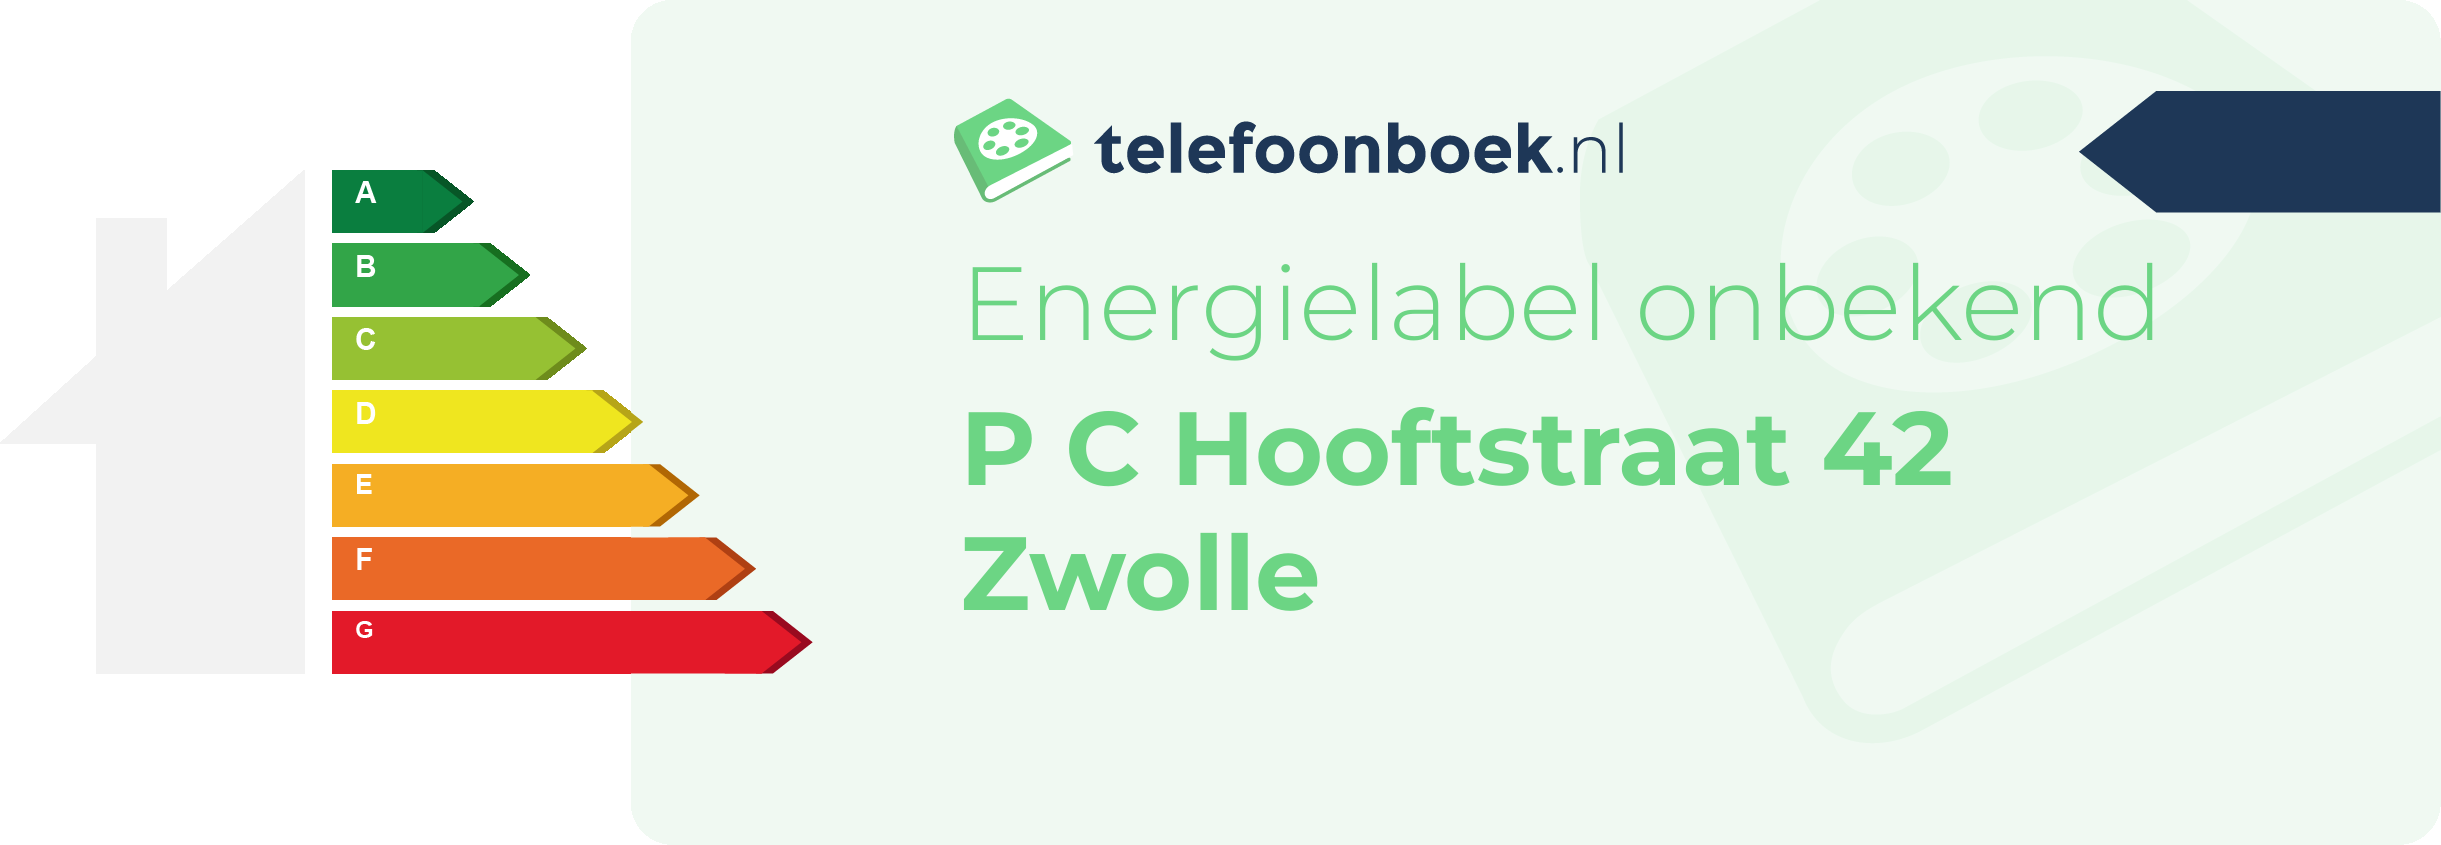 Energielabel P C Hooftstraat 42 Zwolle